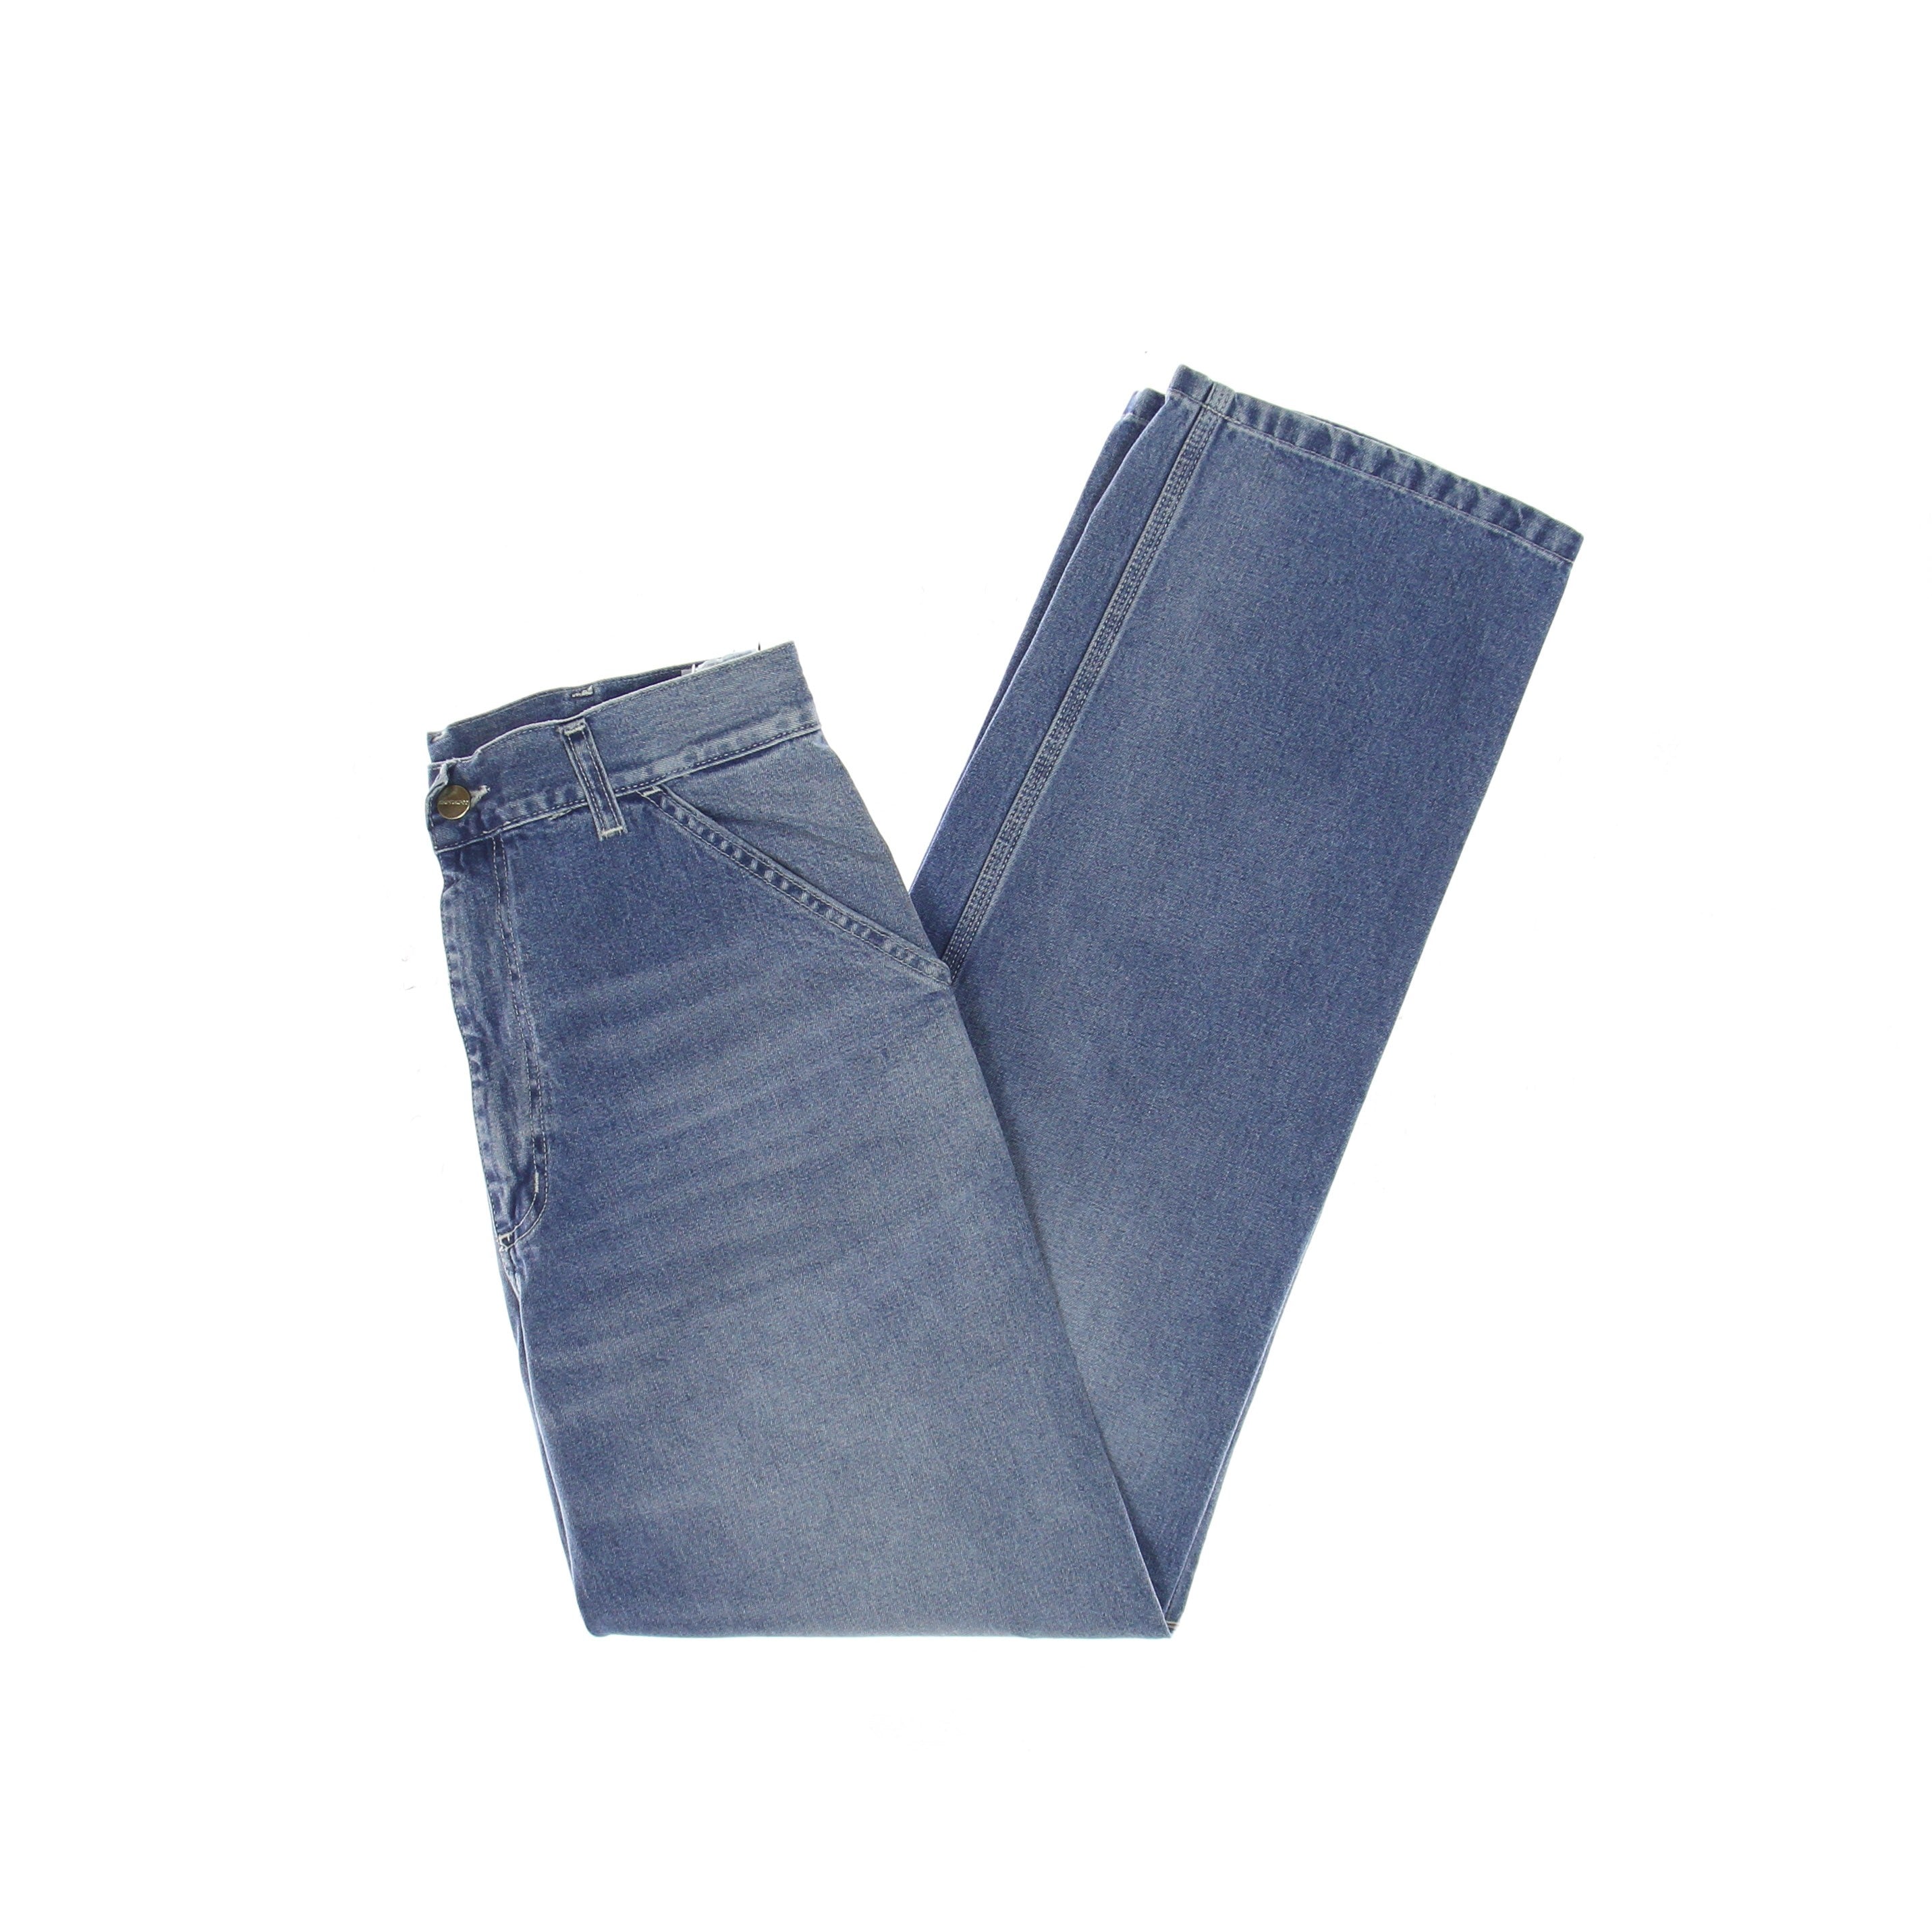 Men's Jeans Simple Pant Blue Worn Bleached